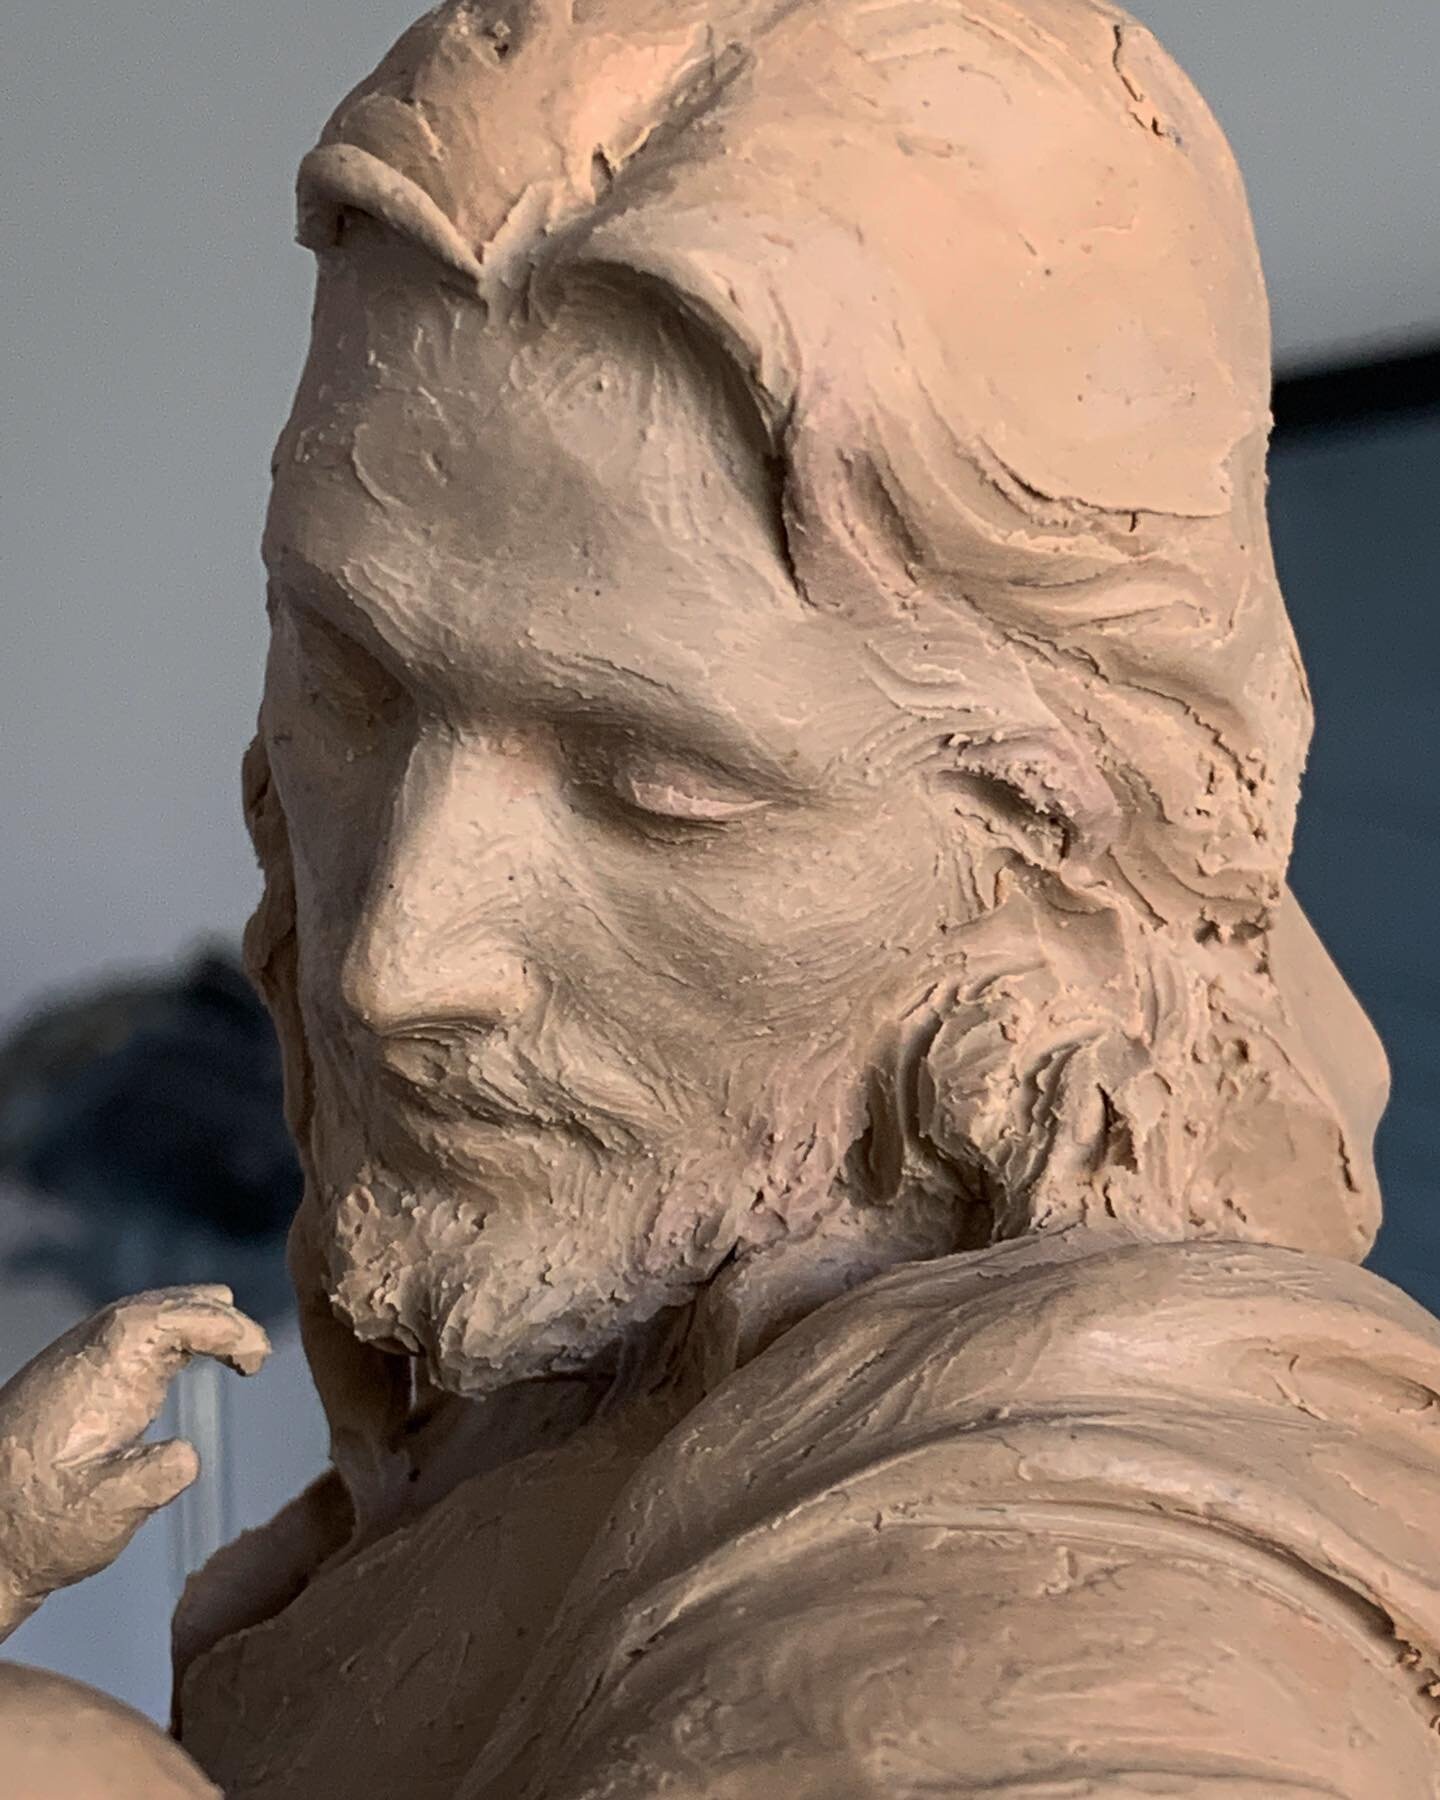 Adding detail, refining. #detailing #claytobronze #sculpture #claysculpture #tysonsnowart